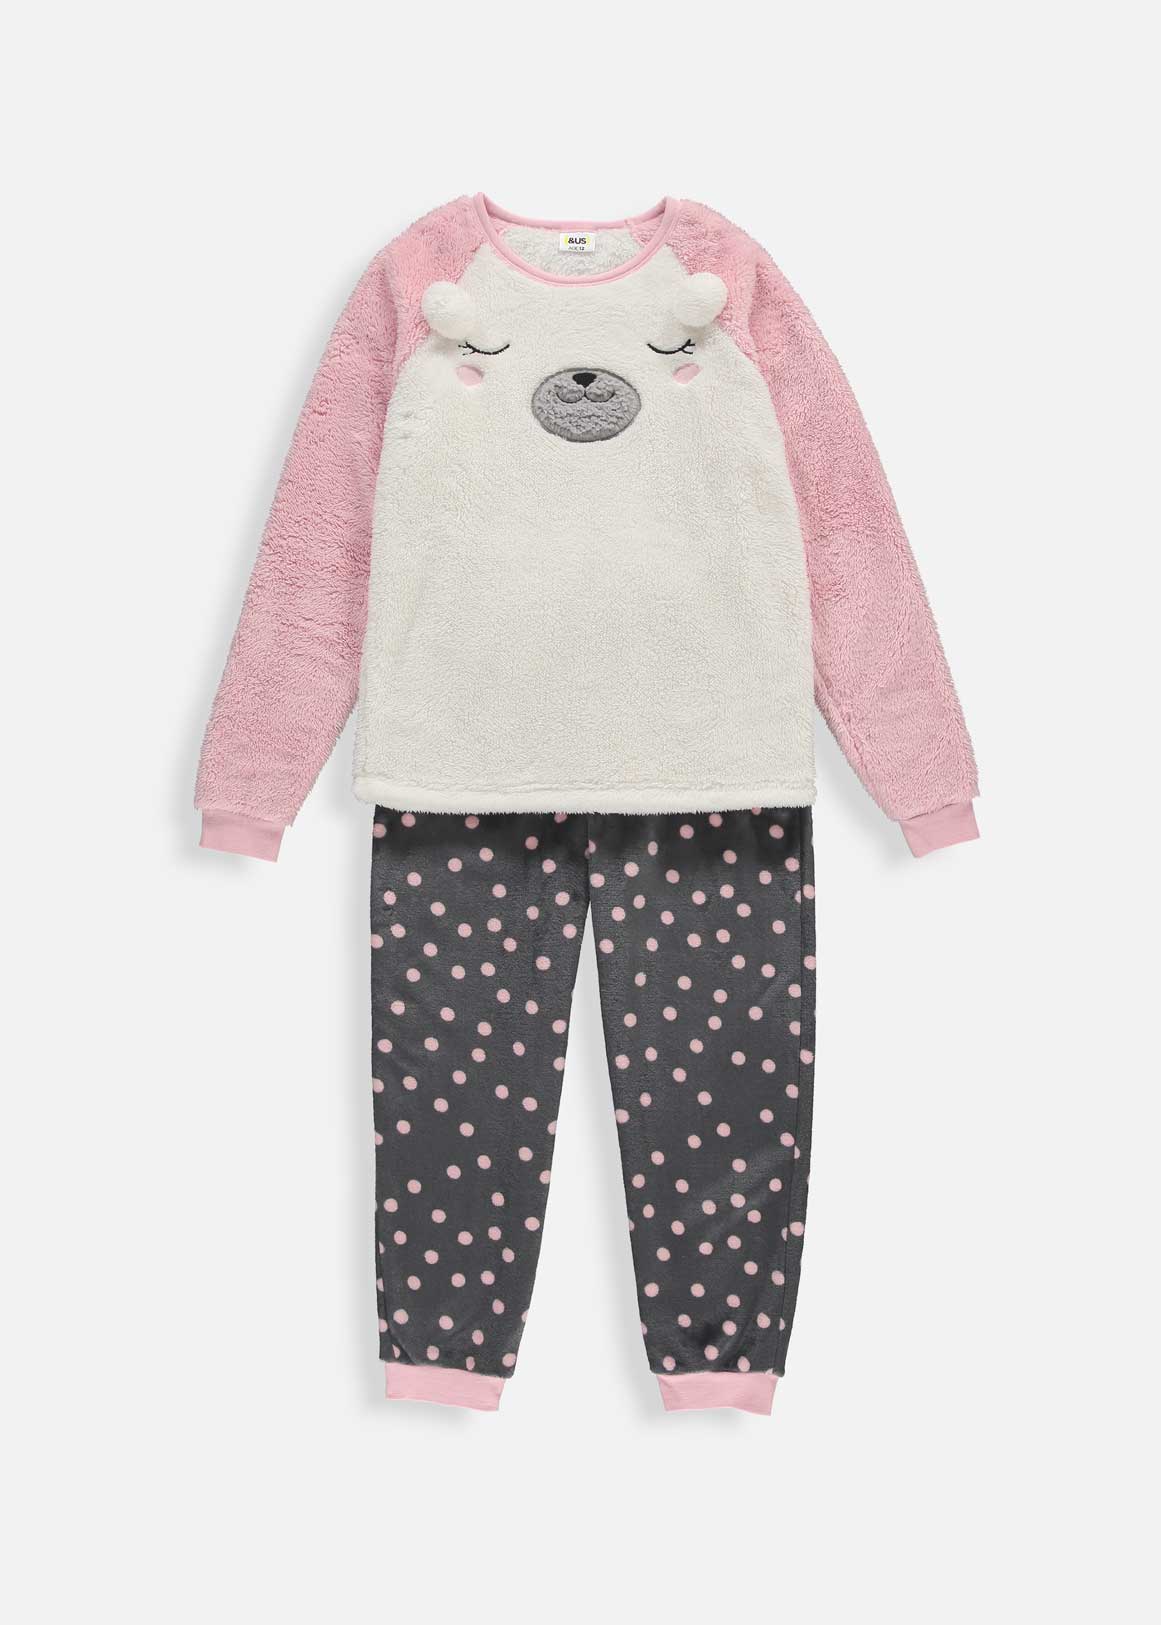 Sleepy Bear Fleece Pyjamas | Woolworths.co.za